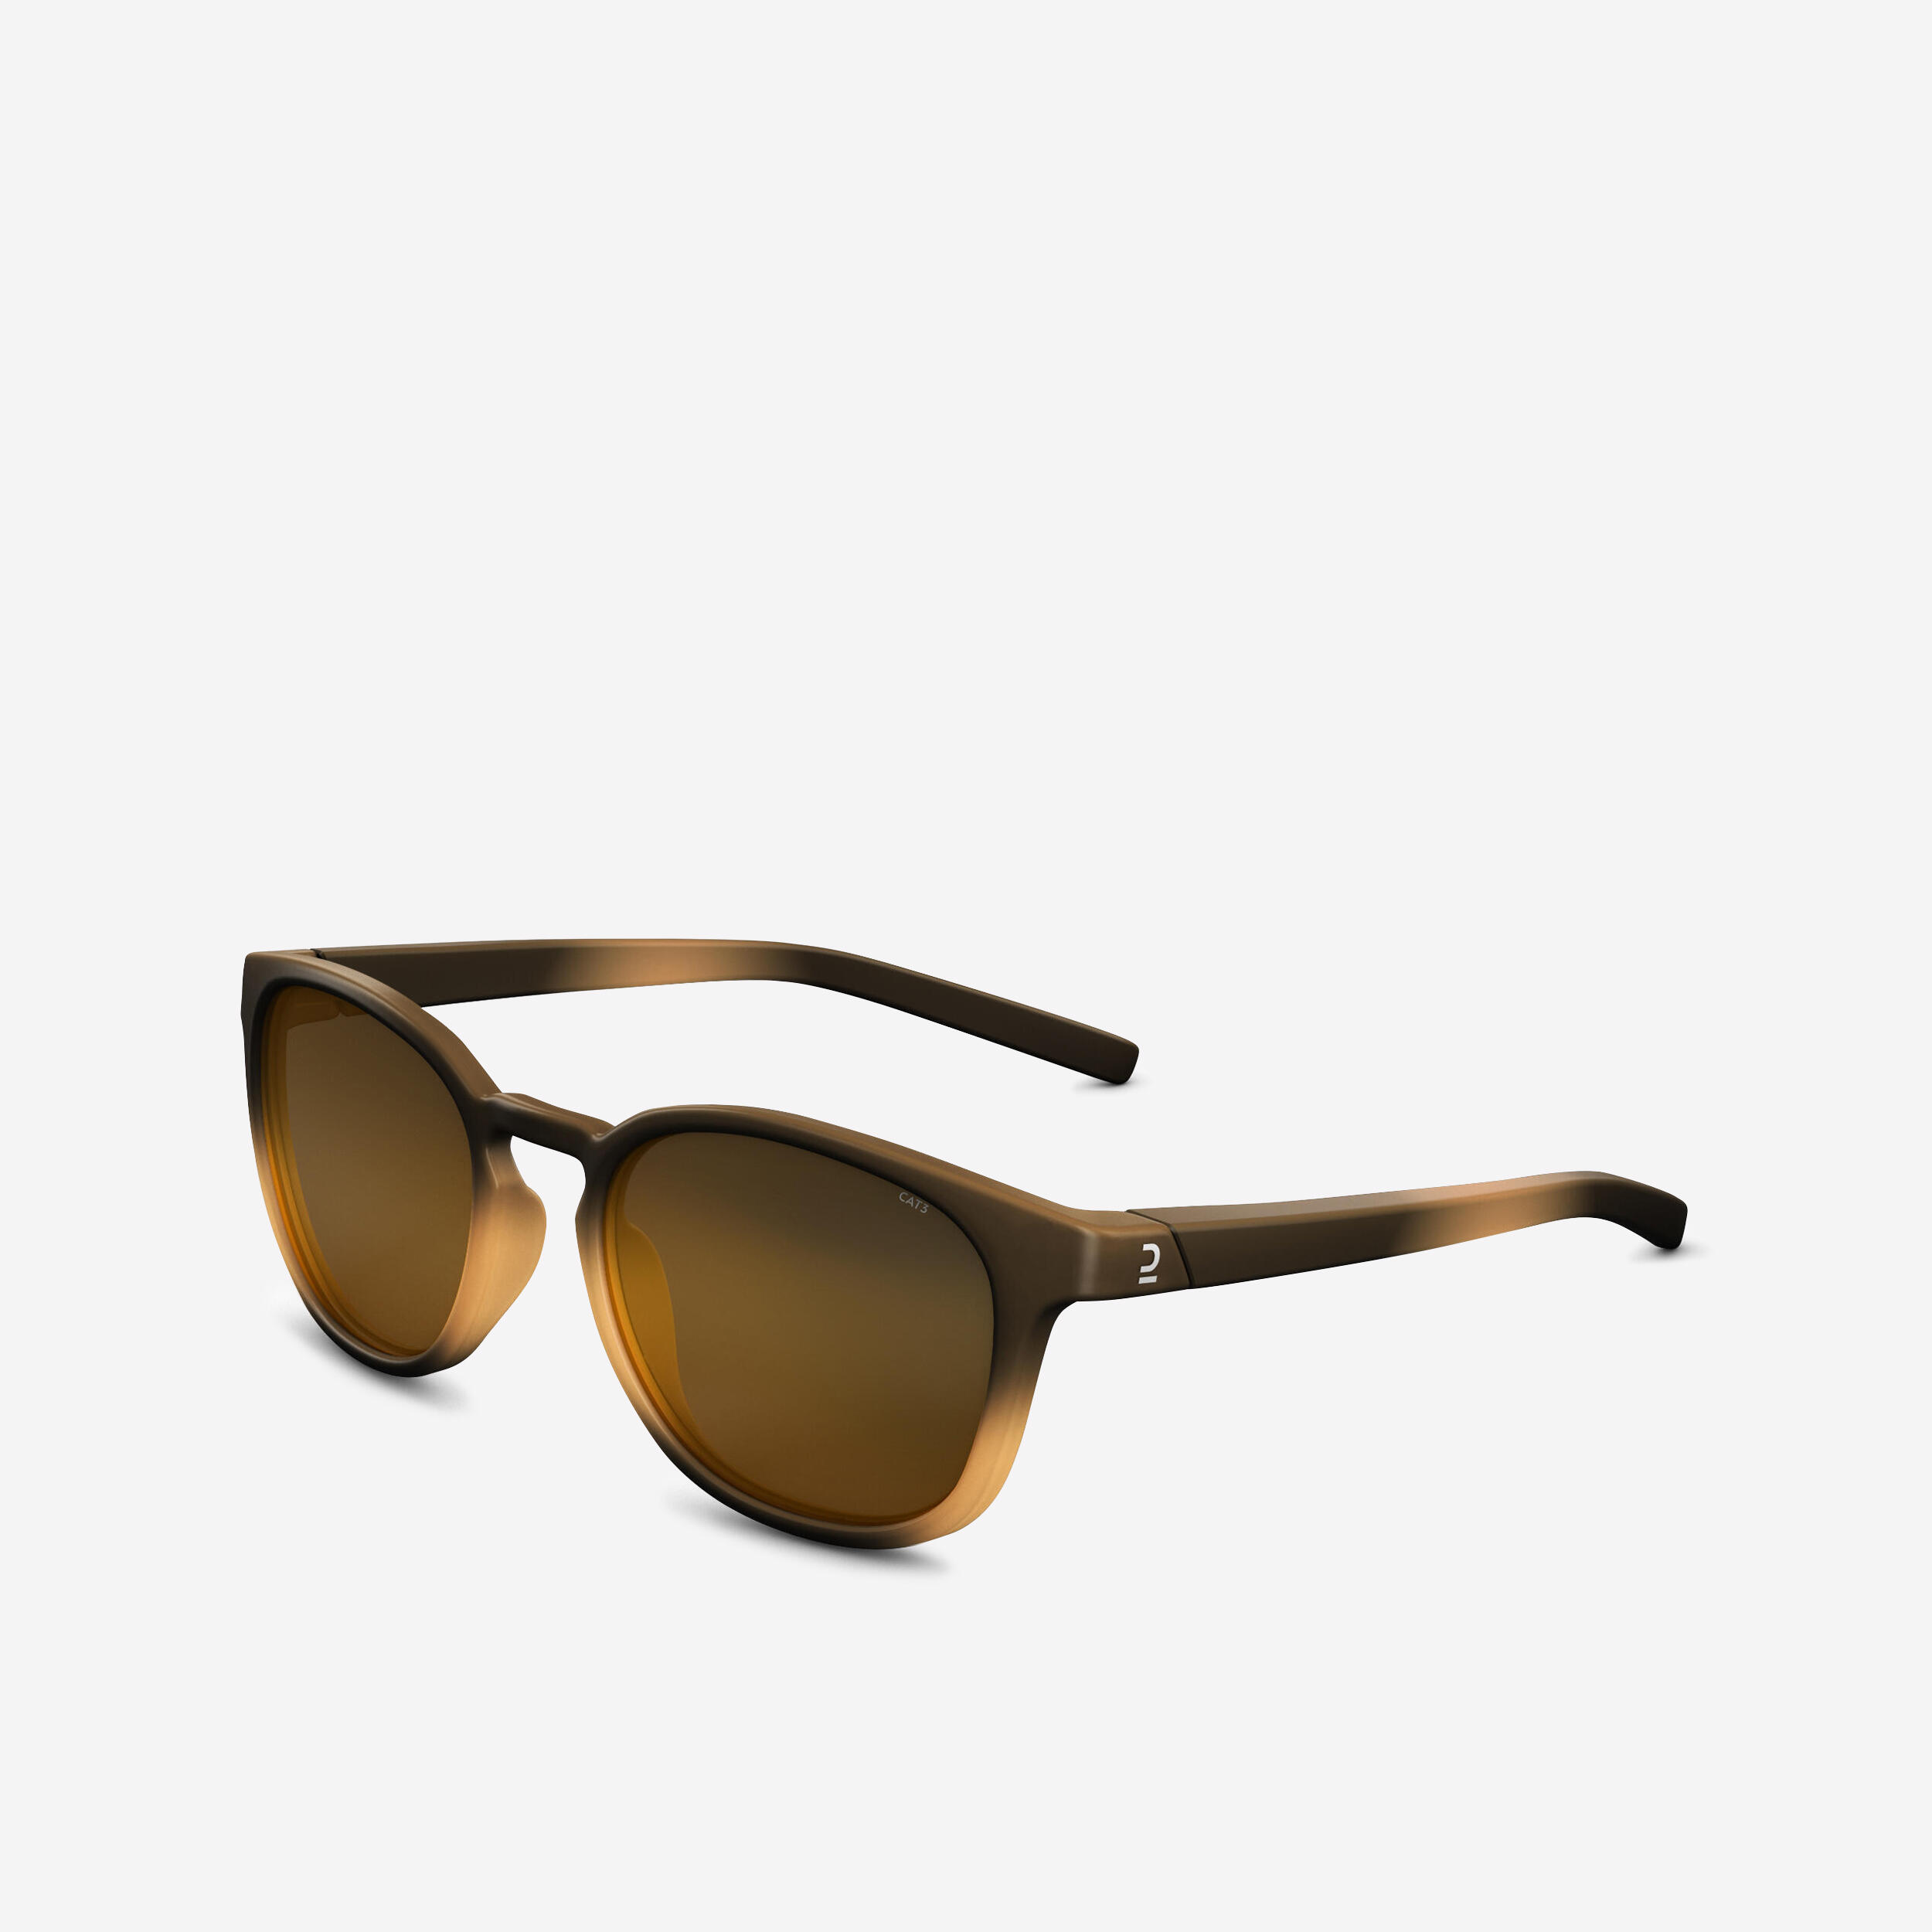 MH160 hiking sunglasses - Adults